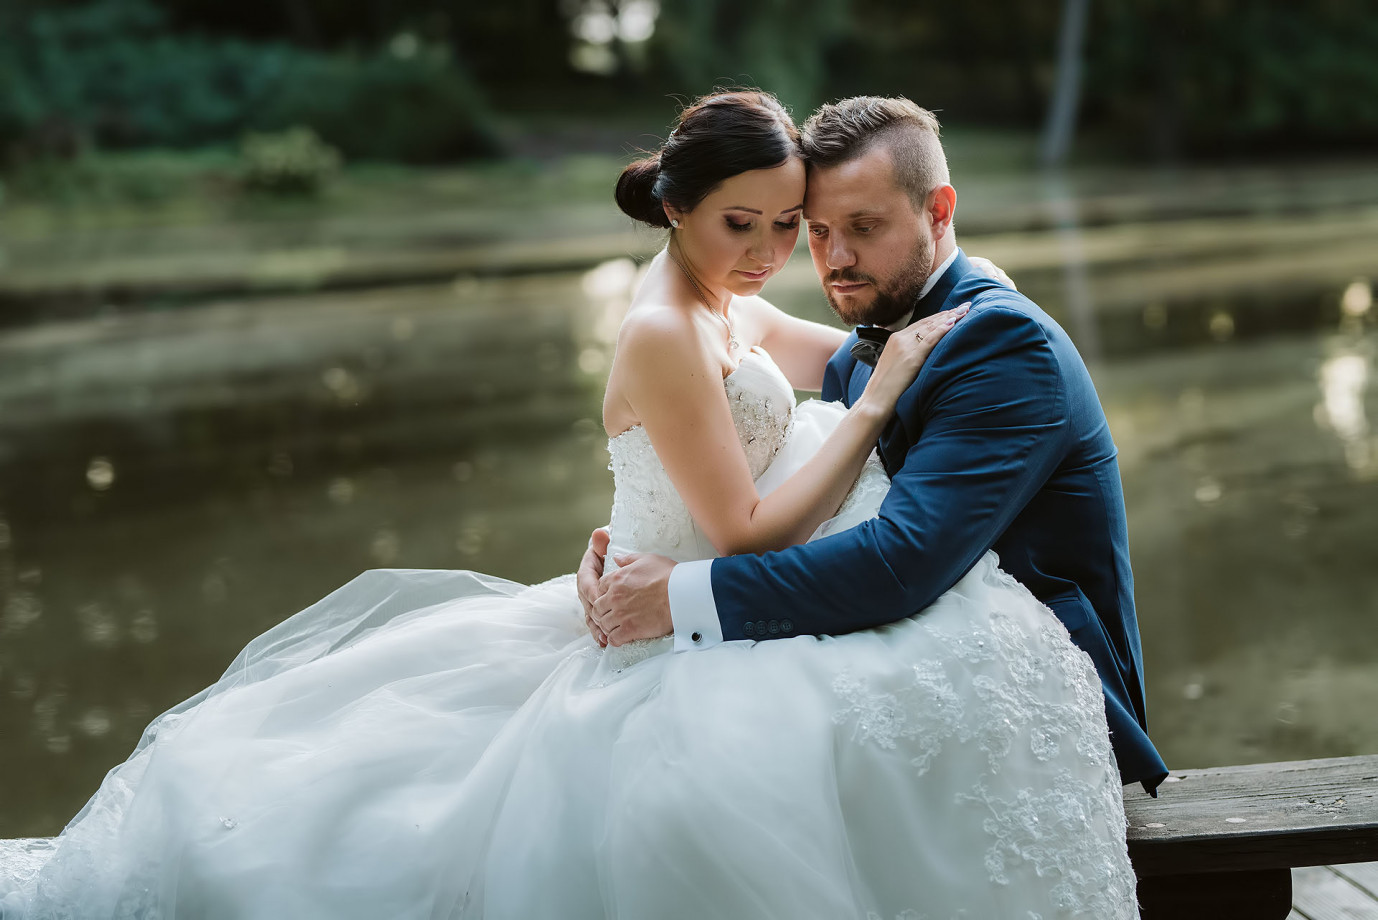 fotograf gorzow-wielkopolski otostudiopl portfolio zdjecia slubne inspiracje wesele plener slubny sesja slubna